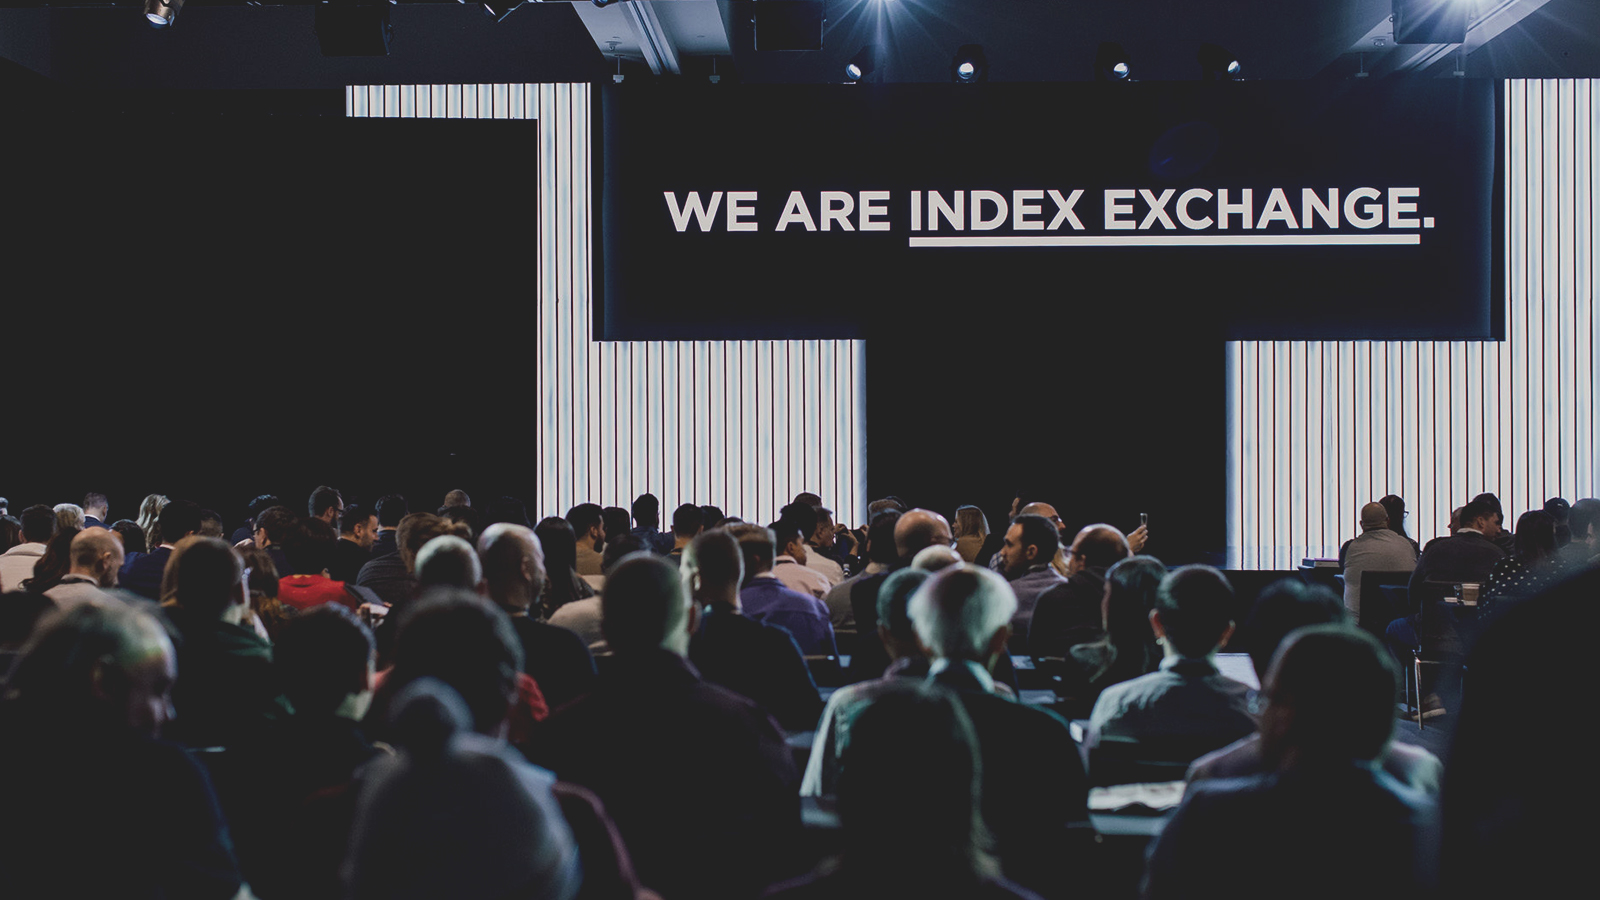 Imagen que representa a personas sentadas en un centro de conferencias mirando un escenario que tiene una pantalla que dice somos index exchange